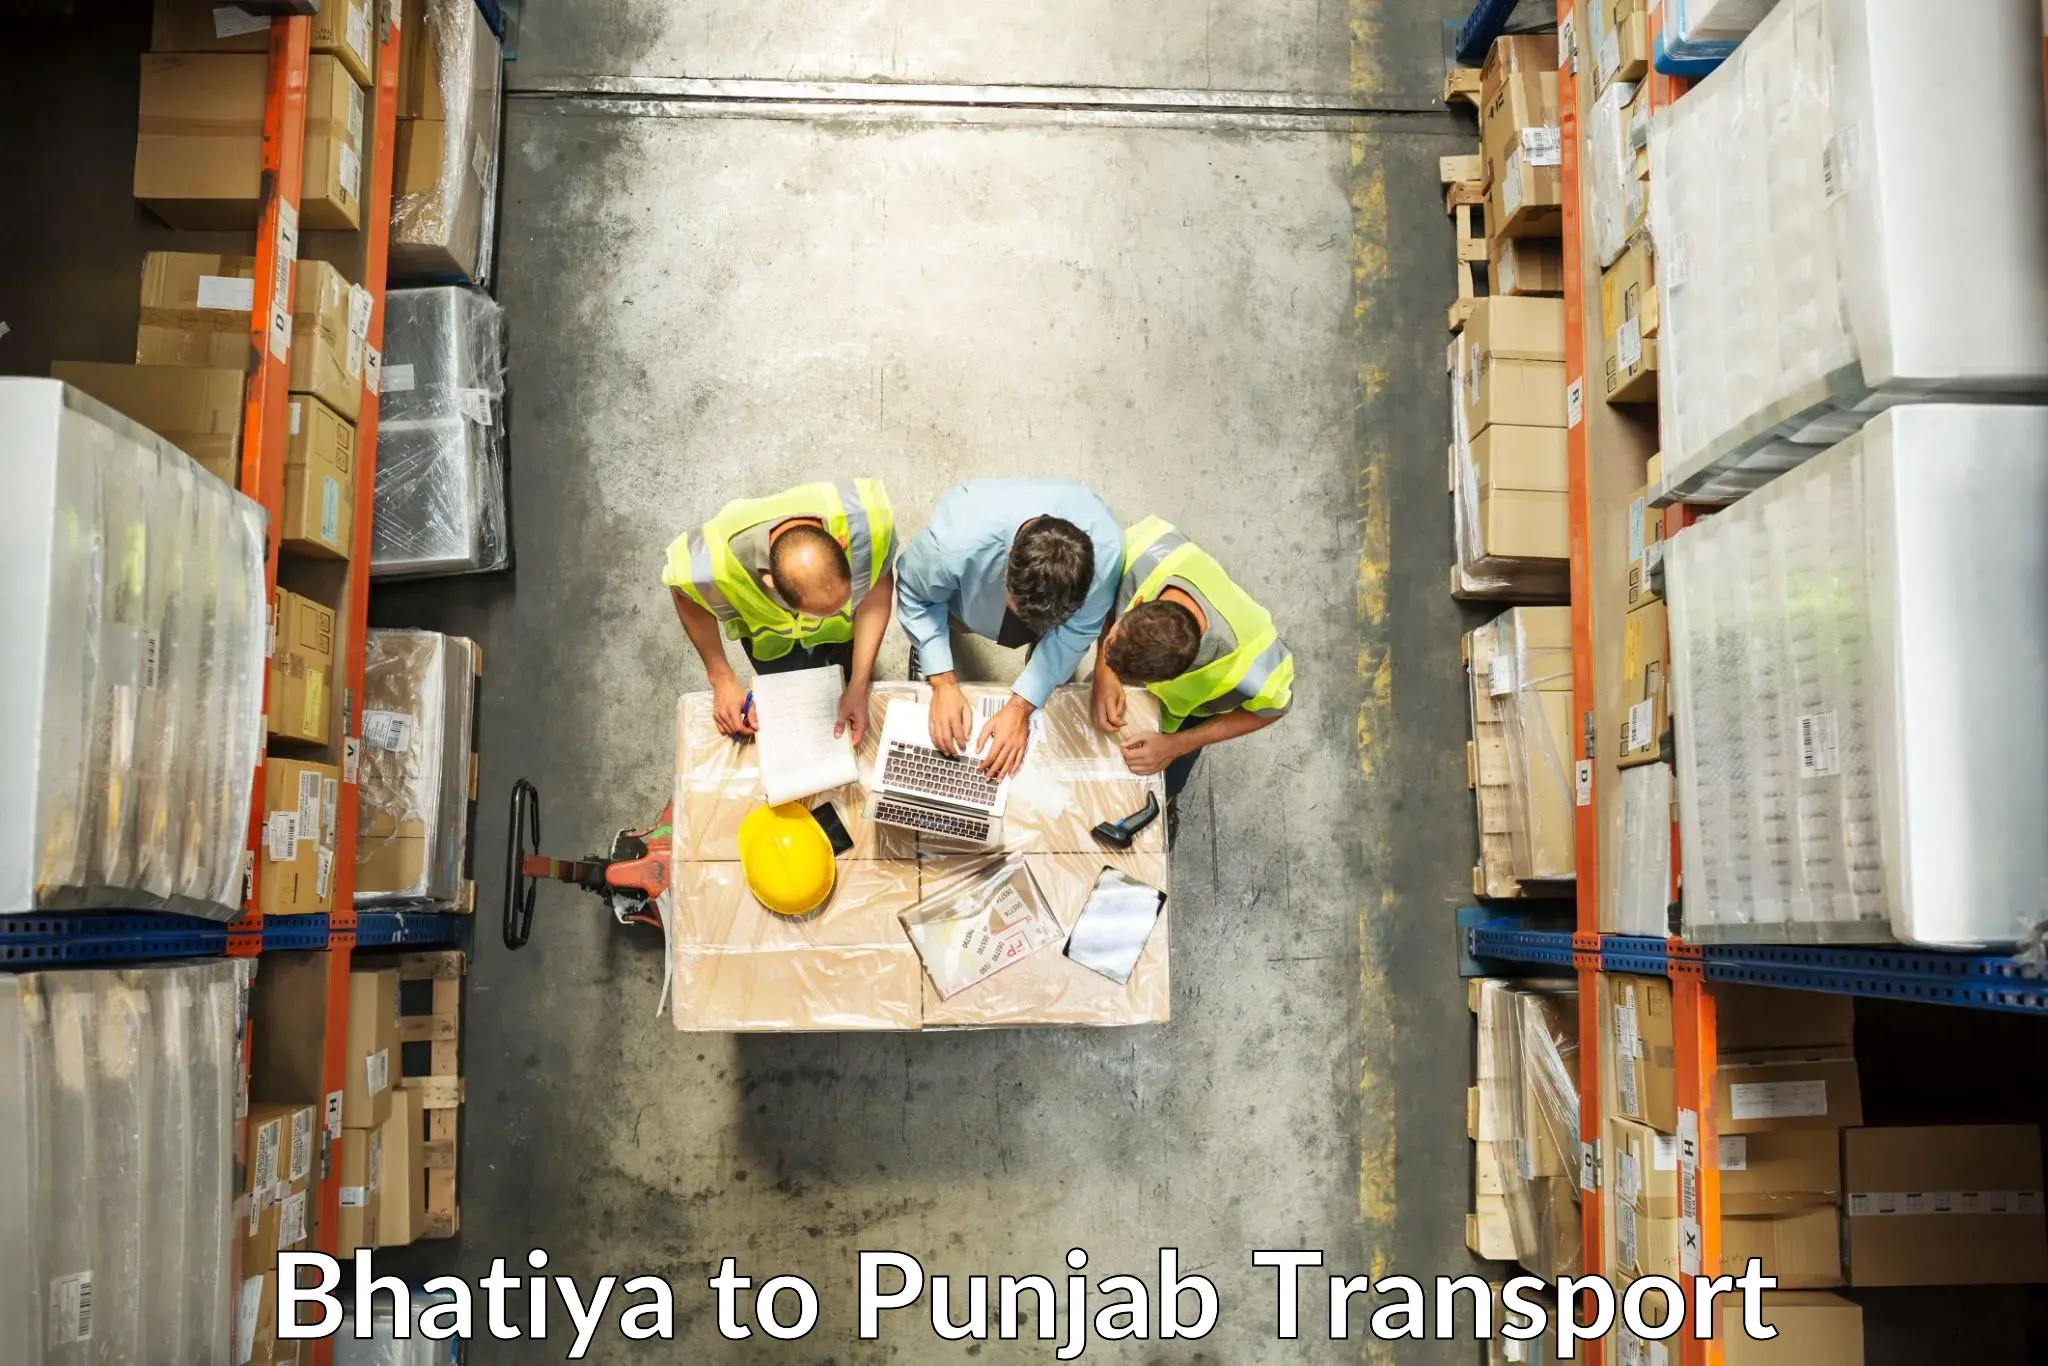 Furniture transport service Bhatiya to Malout